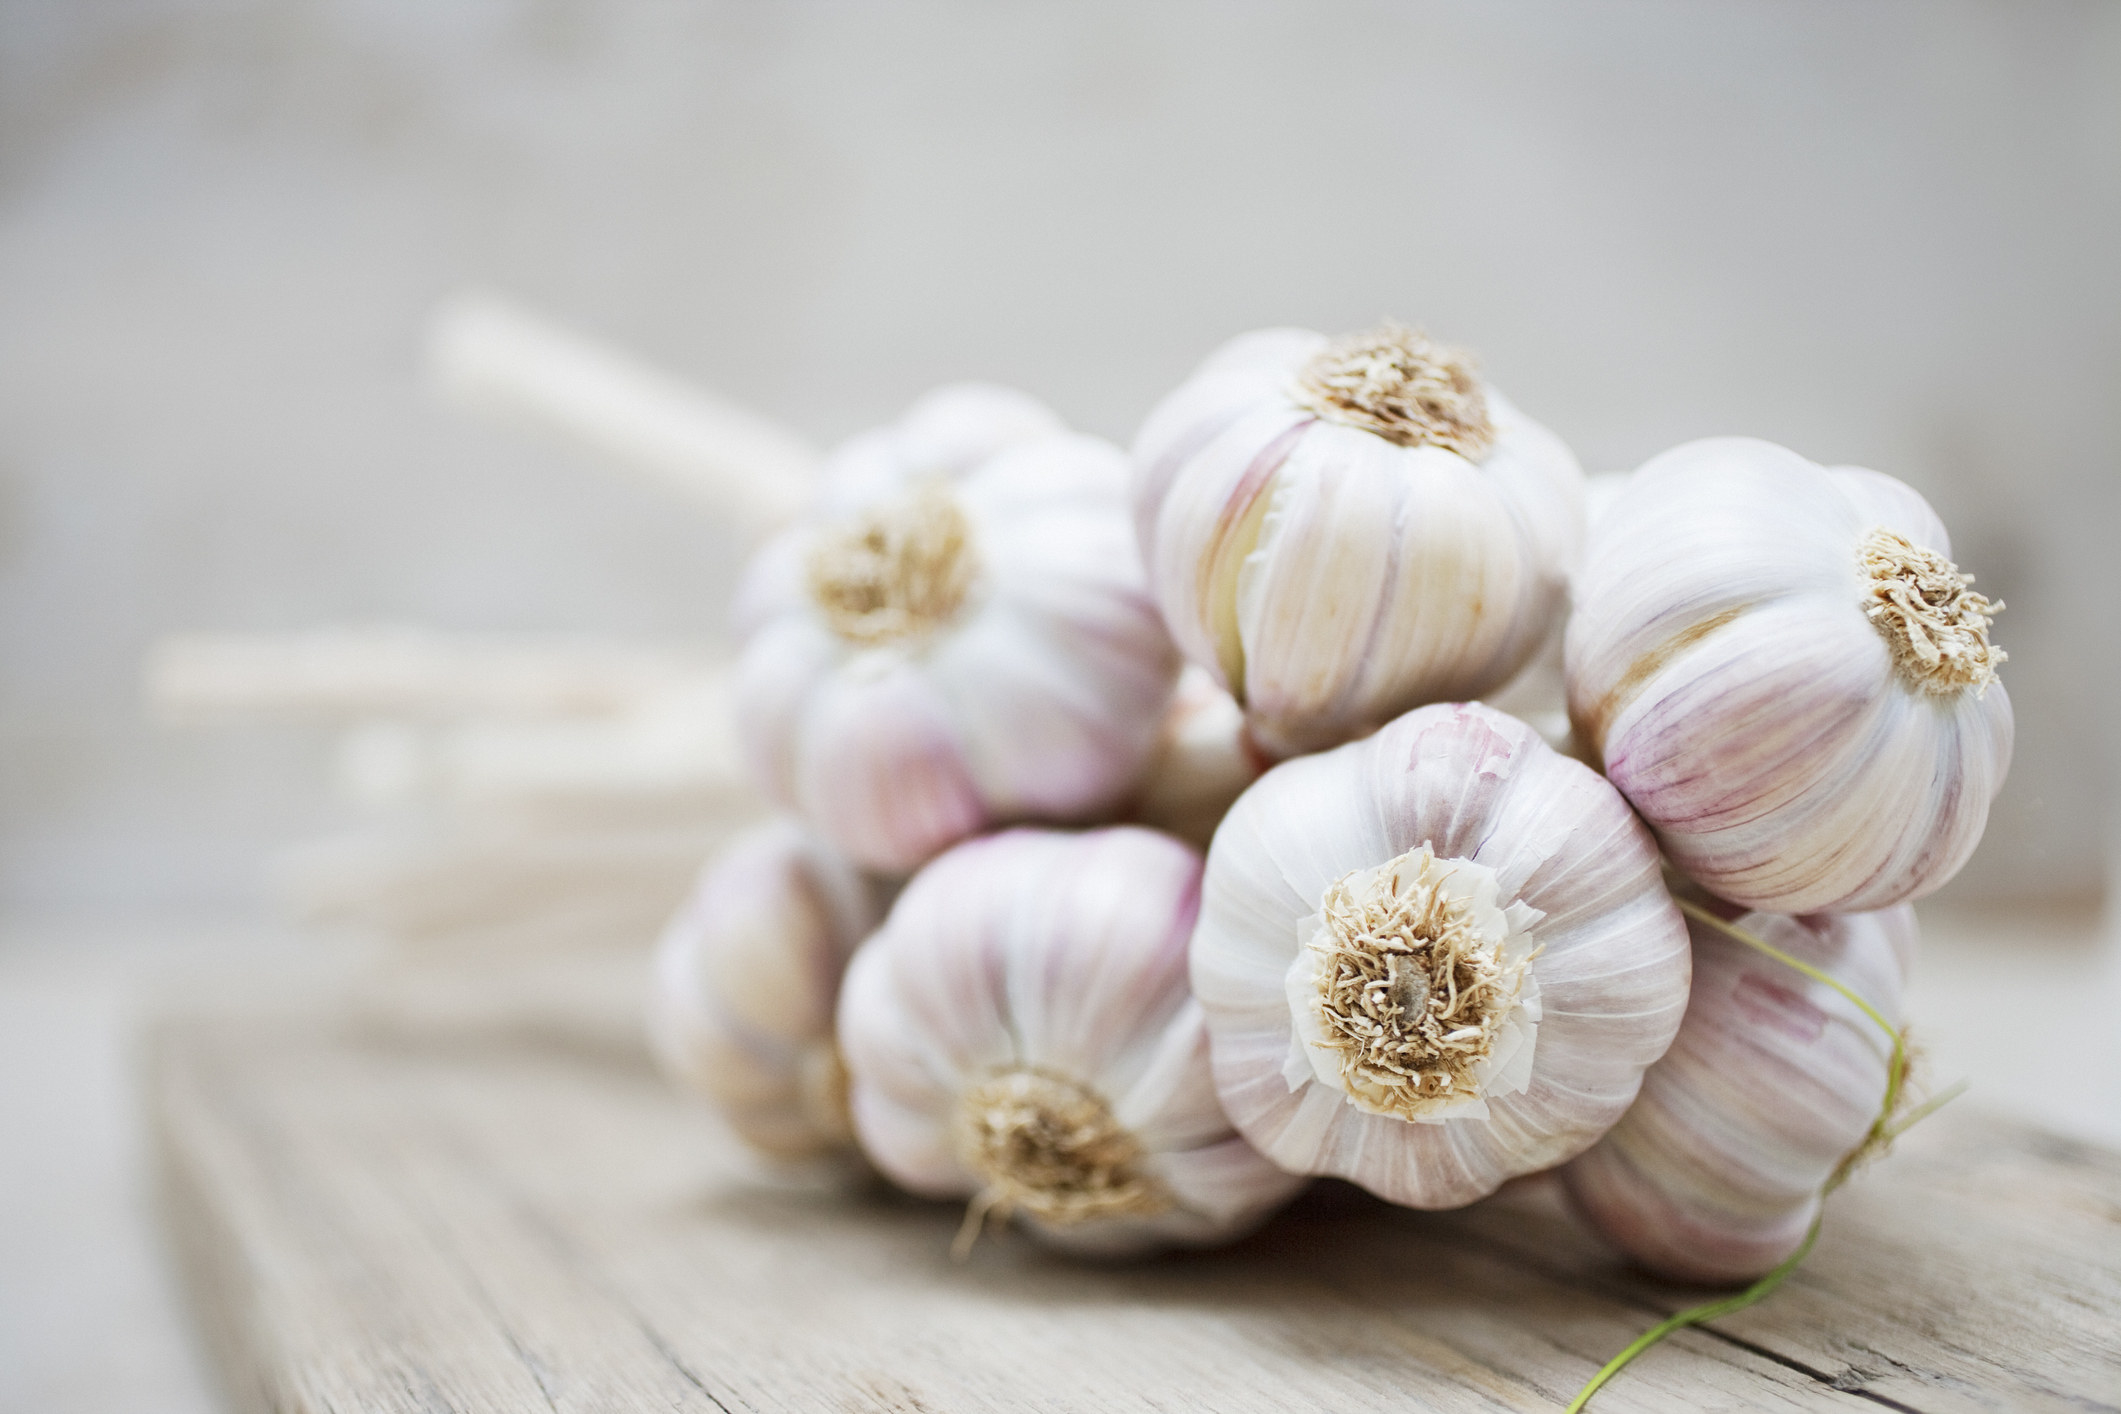 Garlic cloves on cutting board